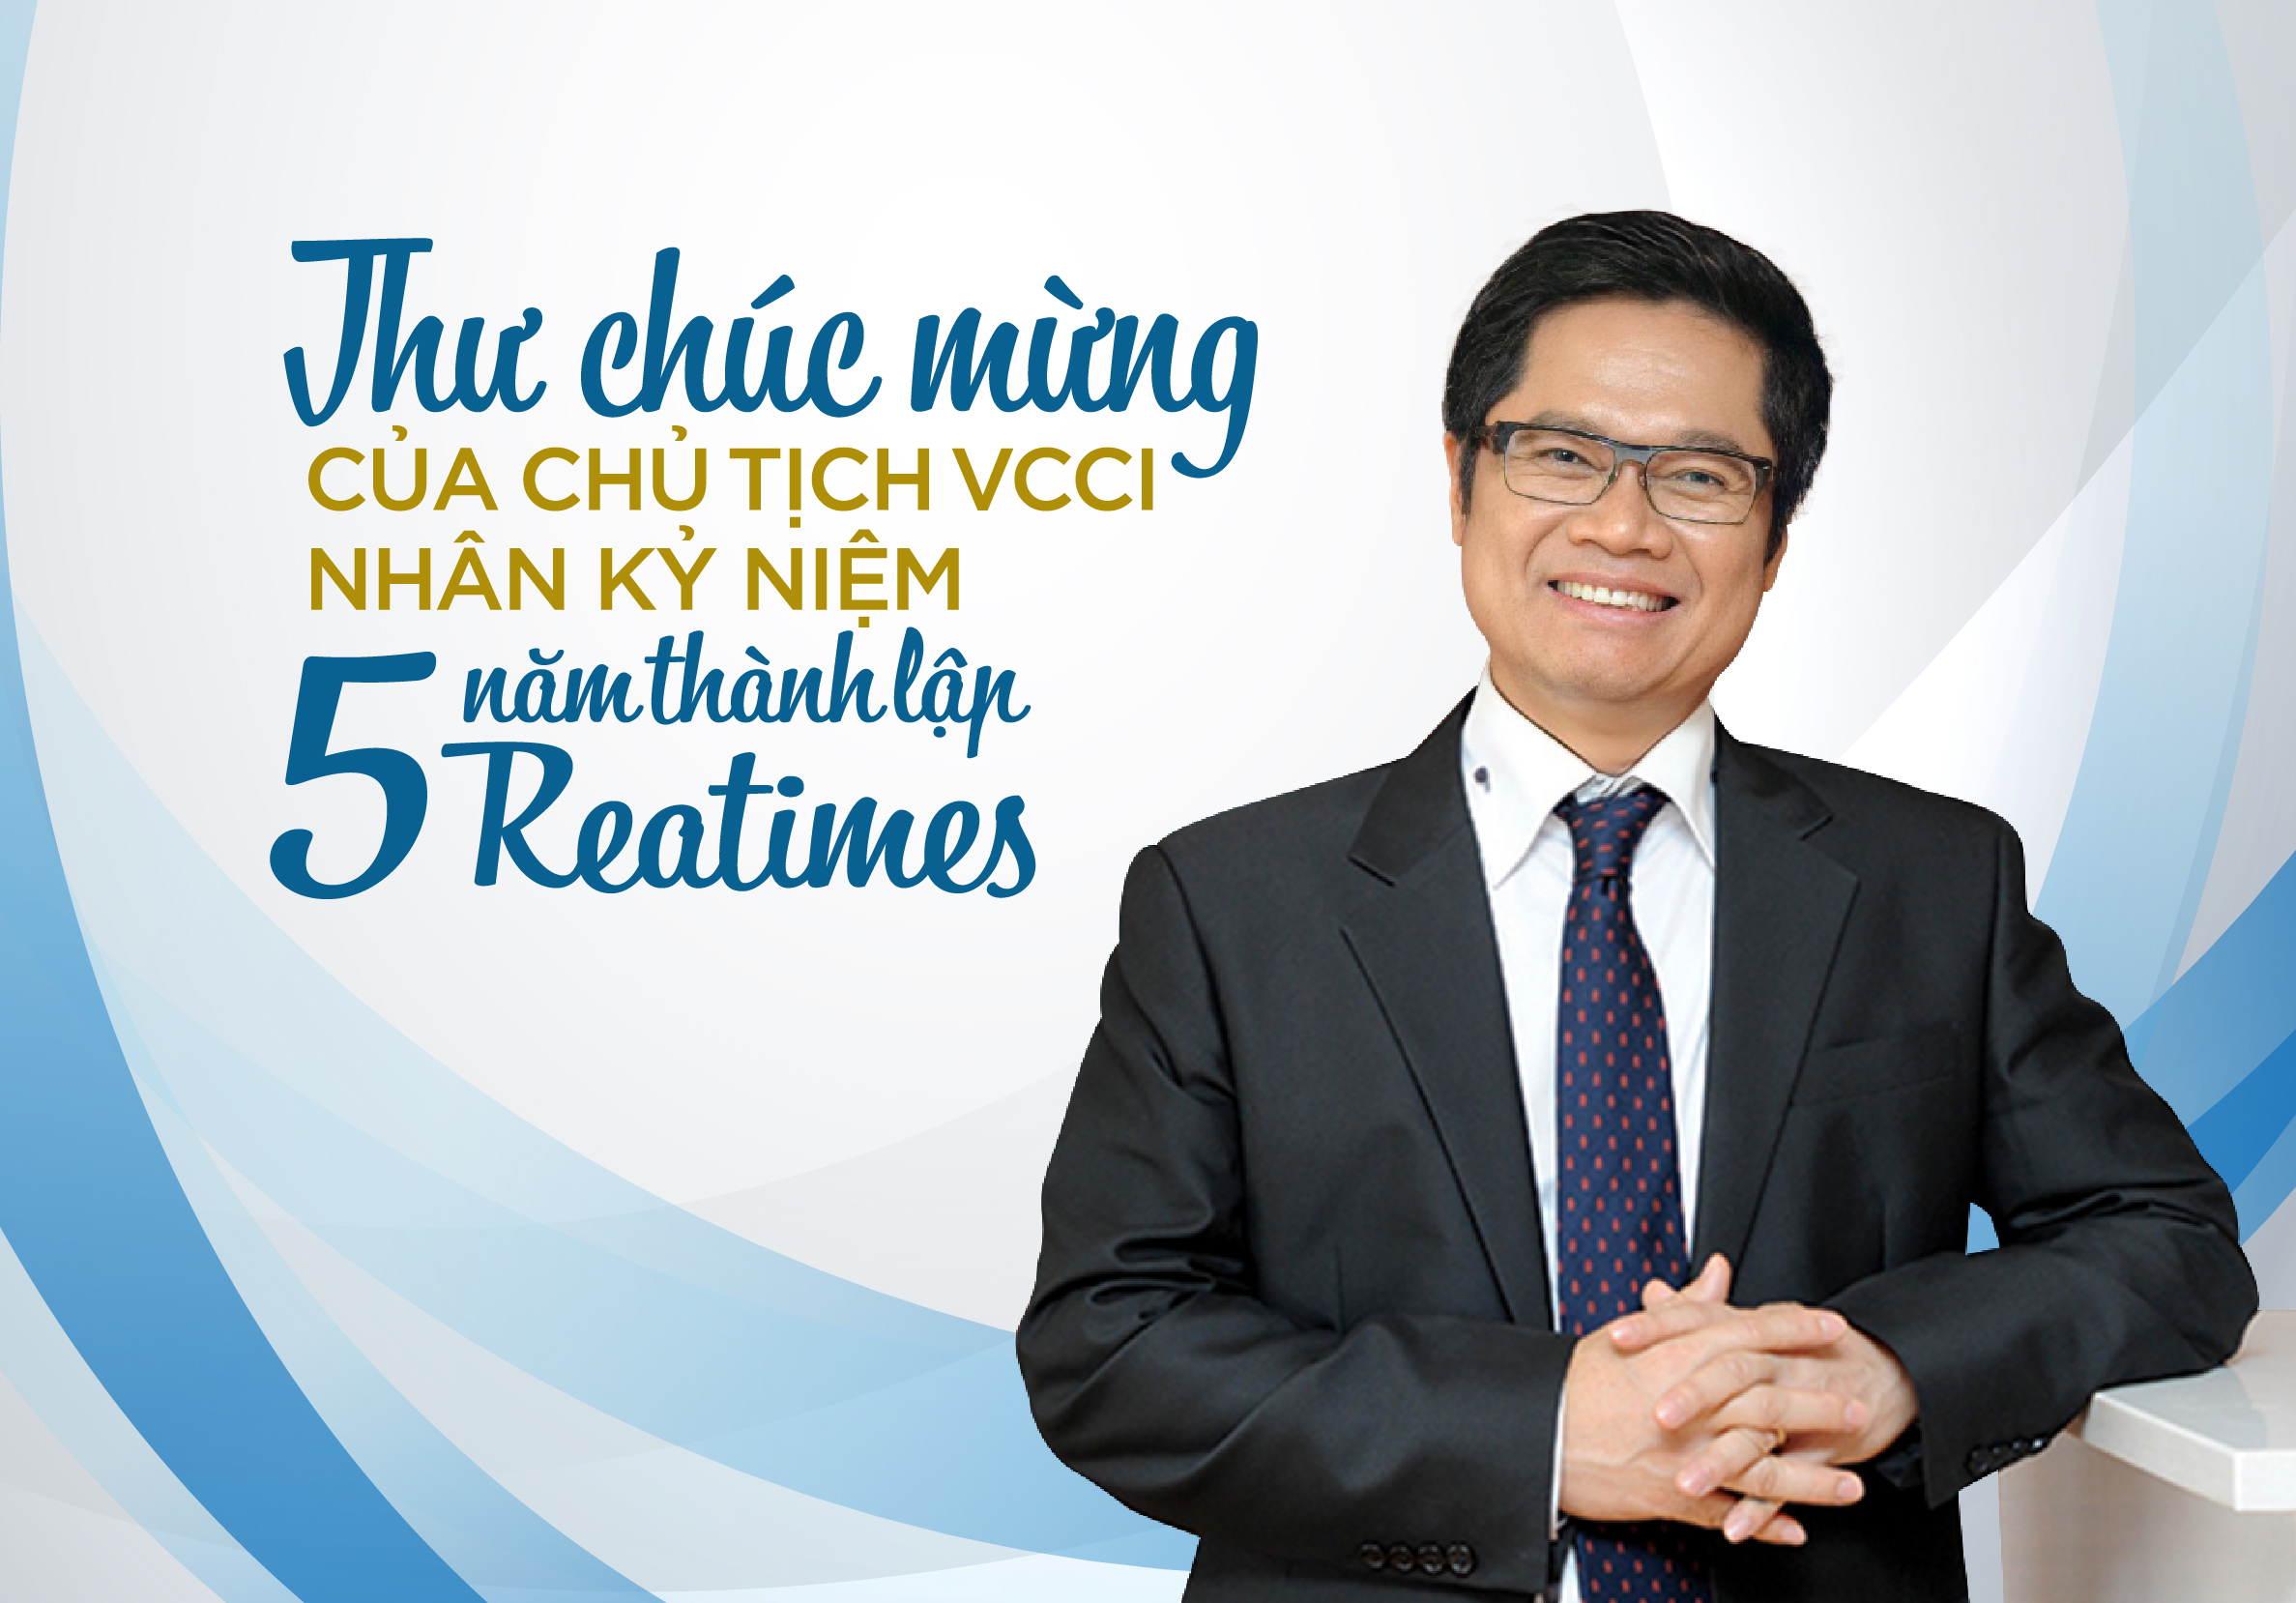 Thư chúc mừng của Chủ tịch VCCI nhân kỷ niệm 5 năm thành lập Reatimes